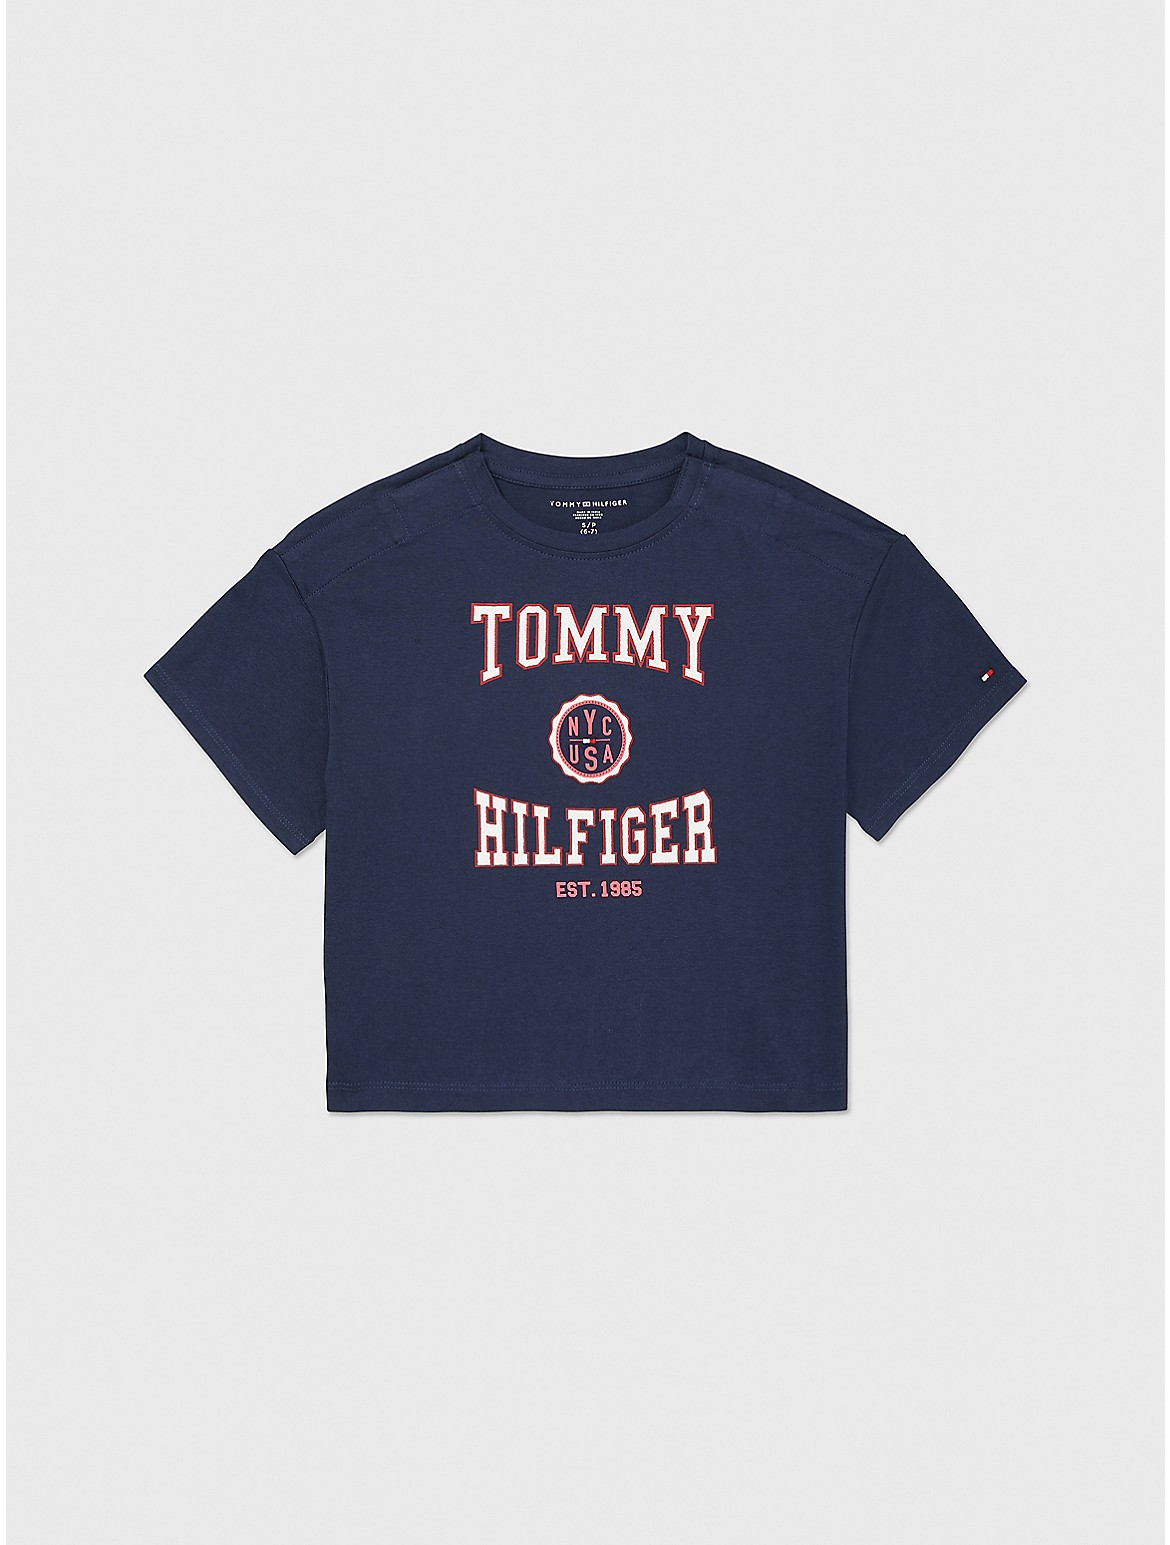 Tommy Hilfiger Girls' Kids' Varsity T-Shirt